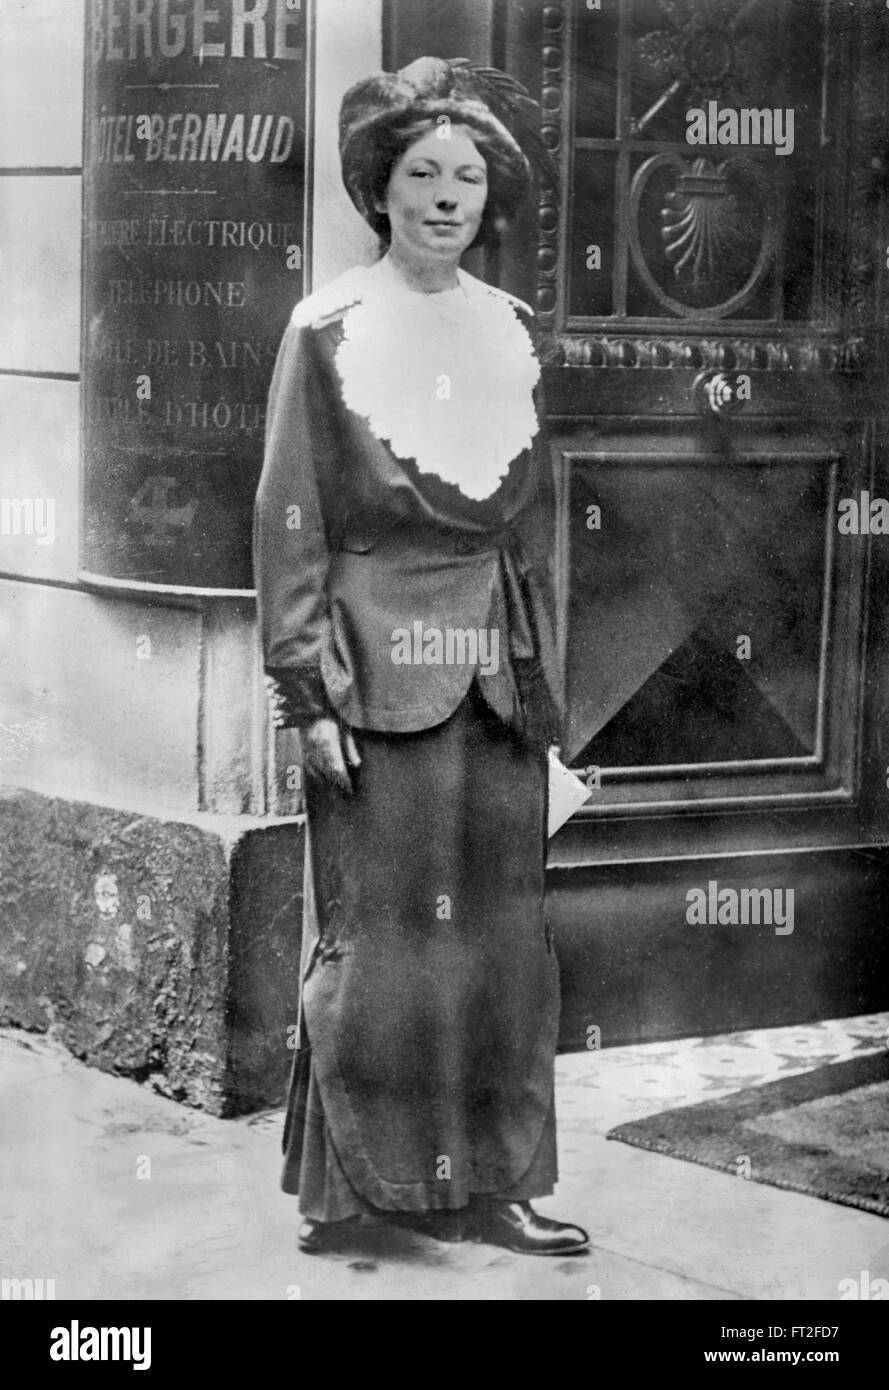 (Dame) Sylvain Pankhurst, fille d'Emmeline Pankhurst et co-fondateur de l'Union sociale et politique. Elle a dirigé ses actions militantes de la France en 1912-1913. Photo c.1913 de Bain News Service. Banque D'Images